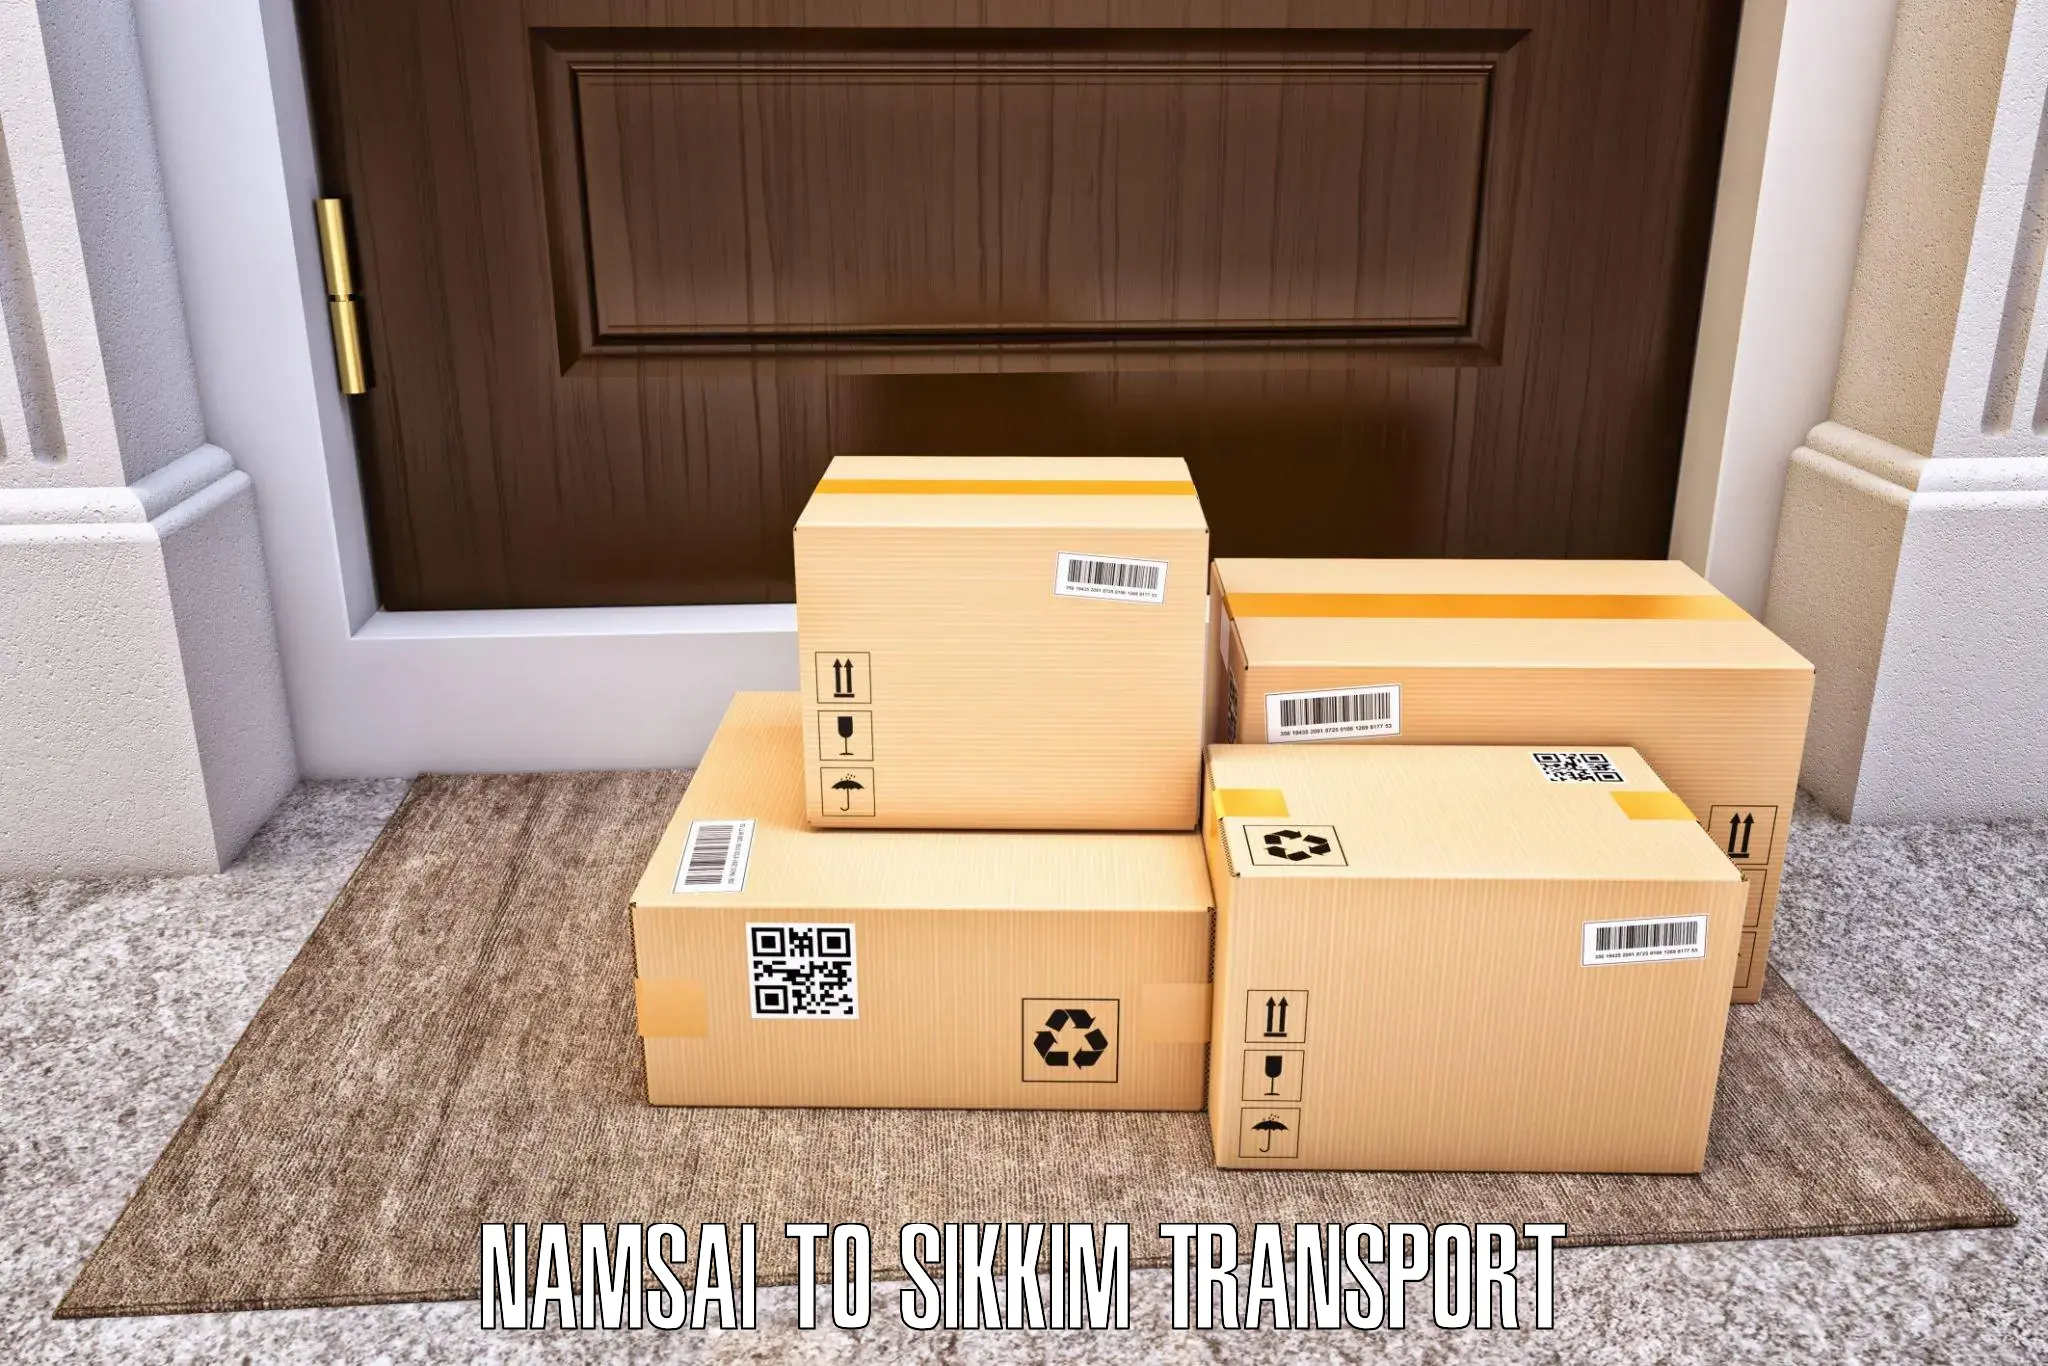 Transport in sharing Namsai to Pelling